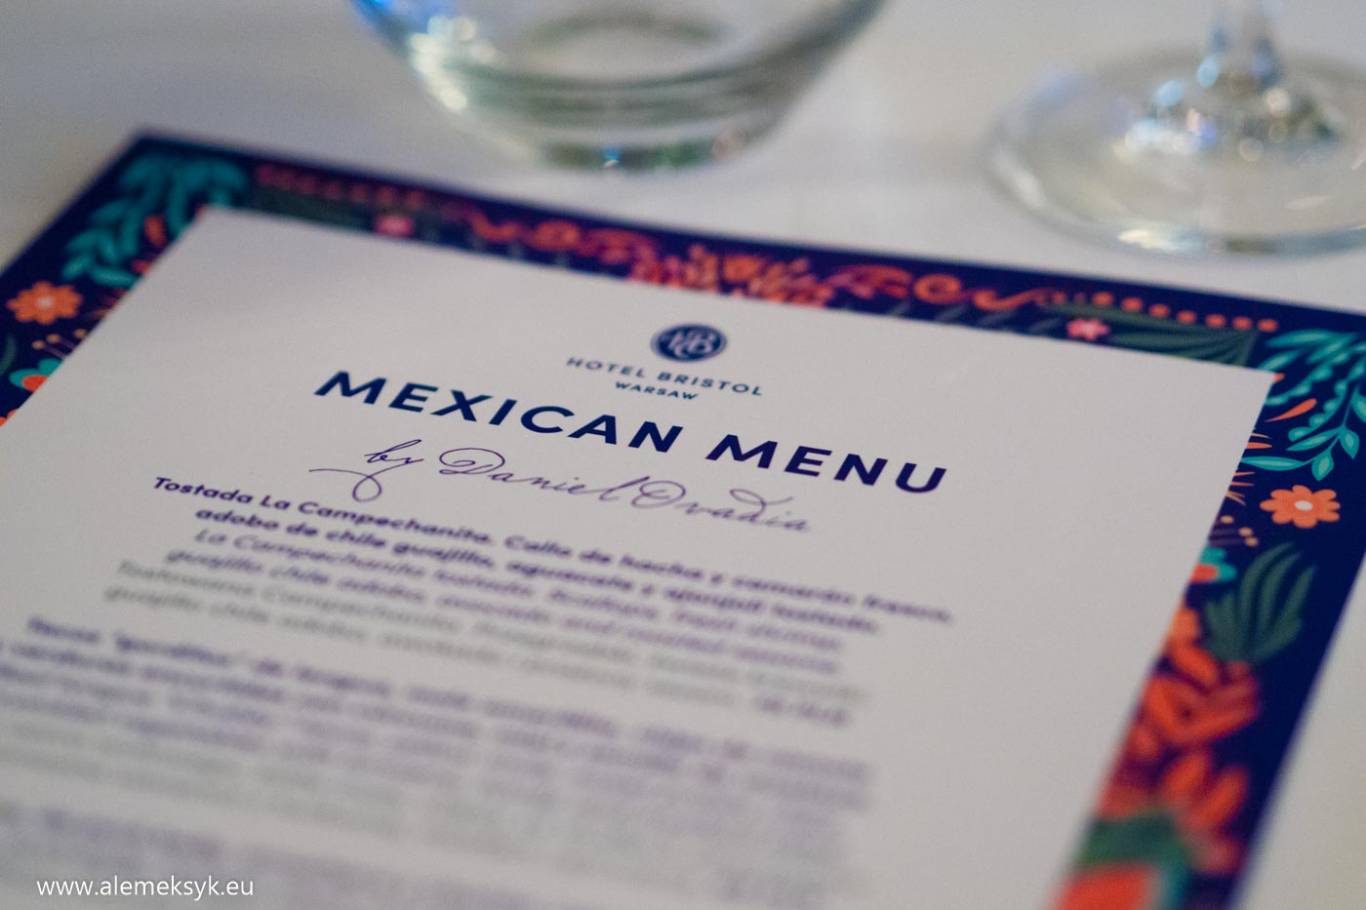 Miesiąc meksykański w restauracji Marconi w hotelu Bristol Warszawa - czyli jak smakuje kuchnia meksykańska w wersji premium